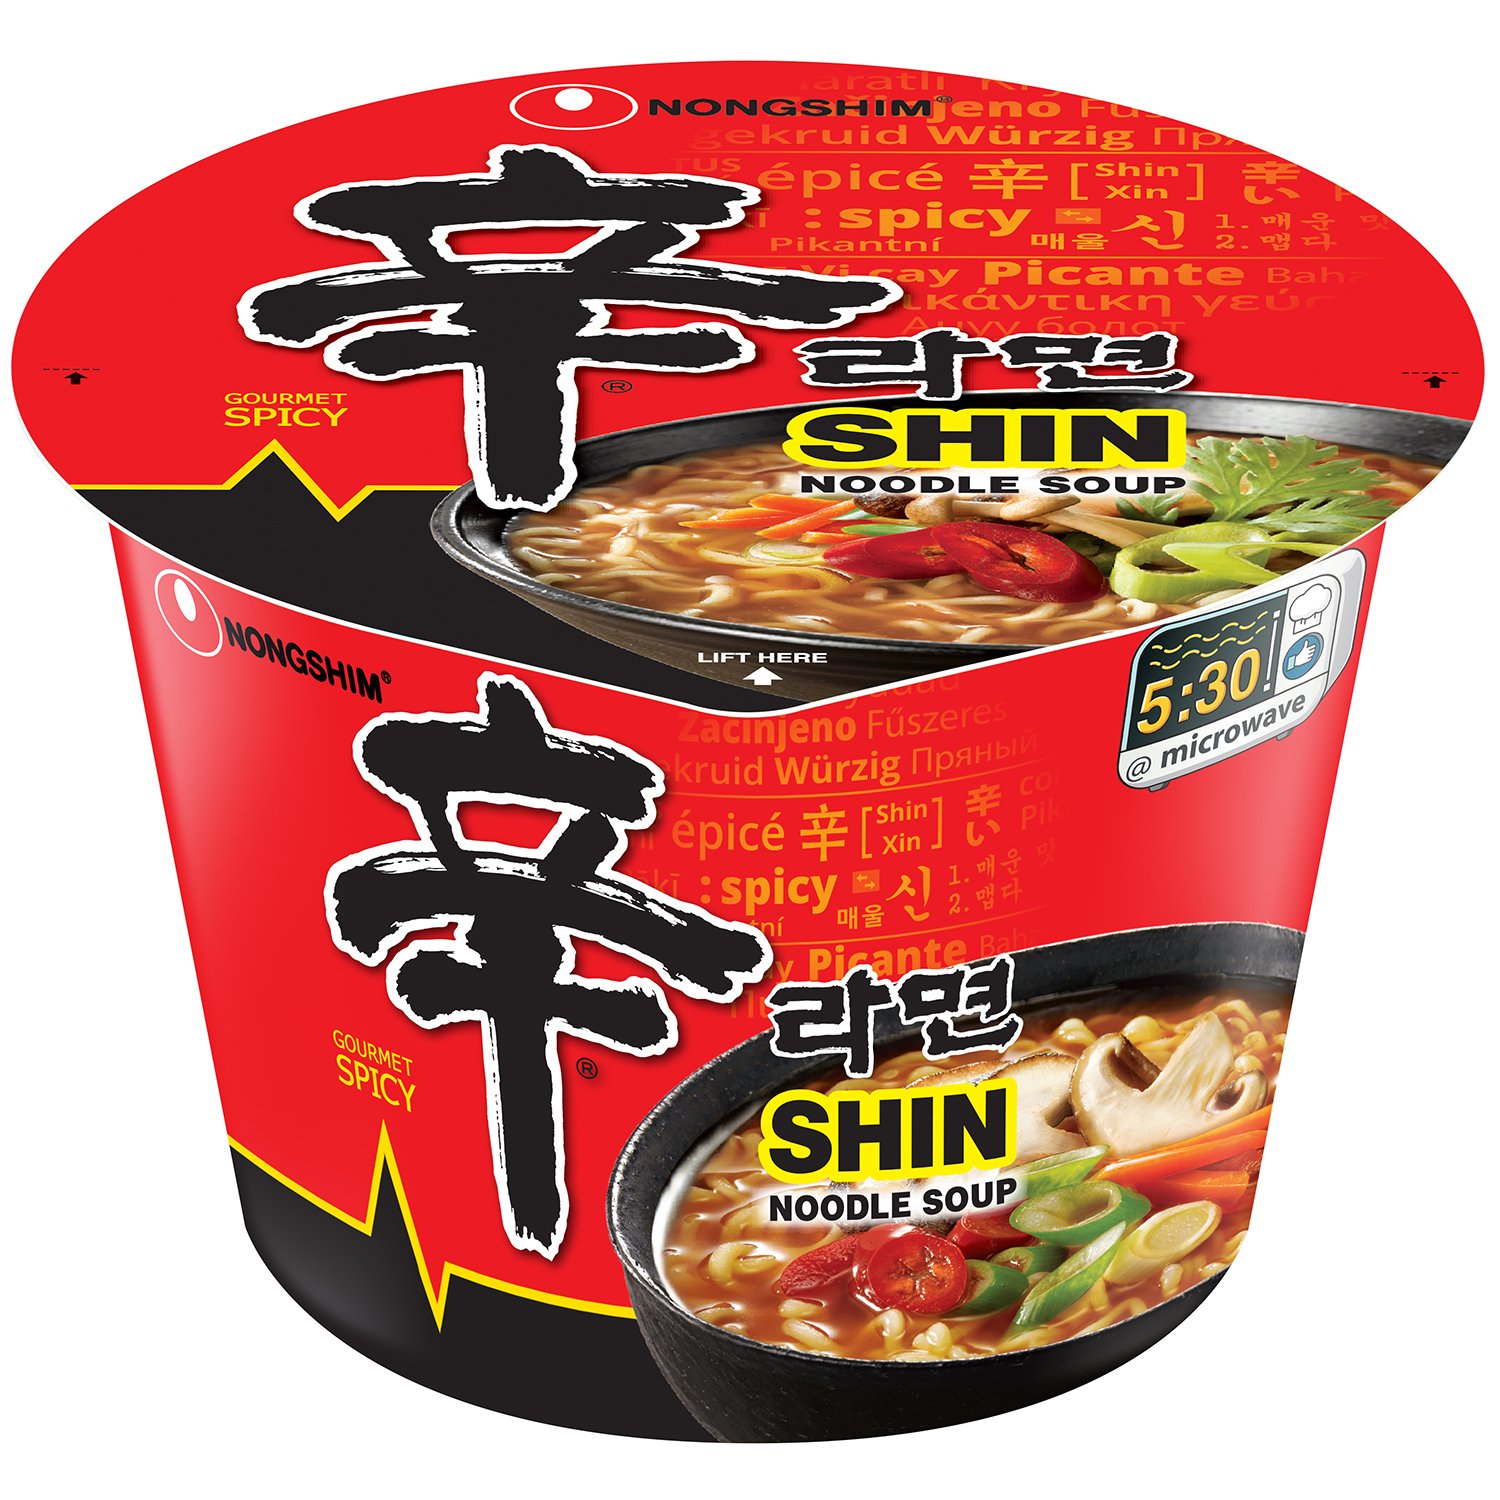 Nongshim Shin Big Bowl Gourmet Spicy Noodle Soup Shop Soups Chili